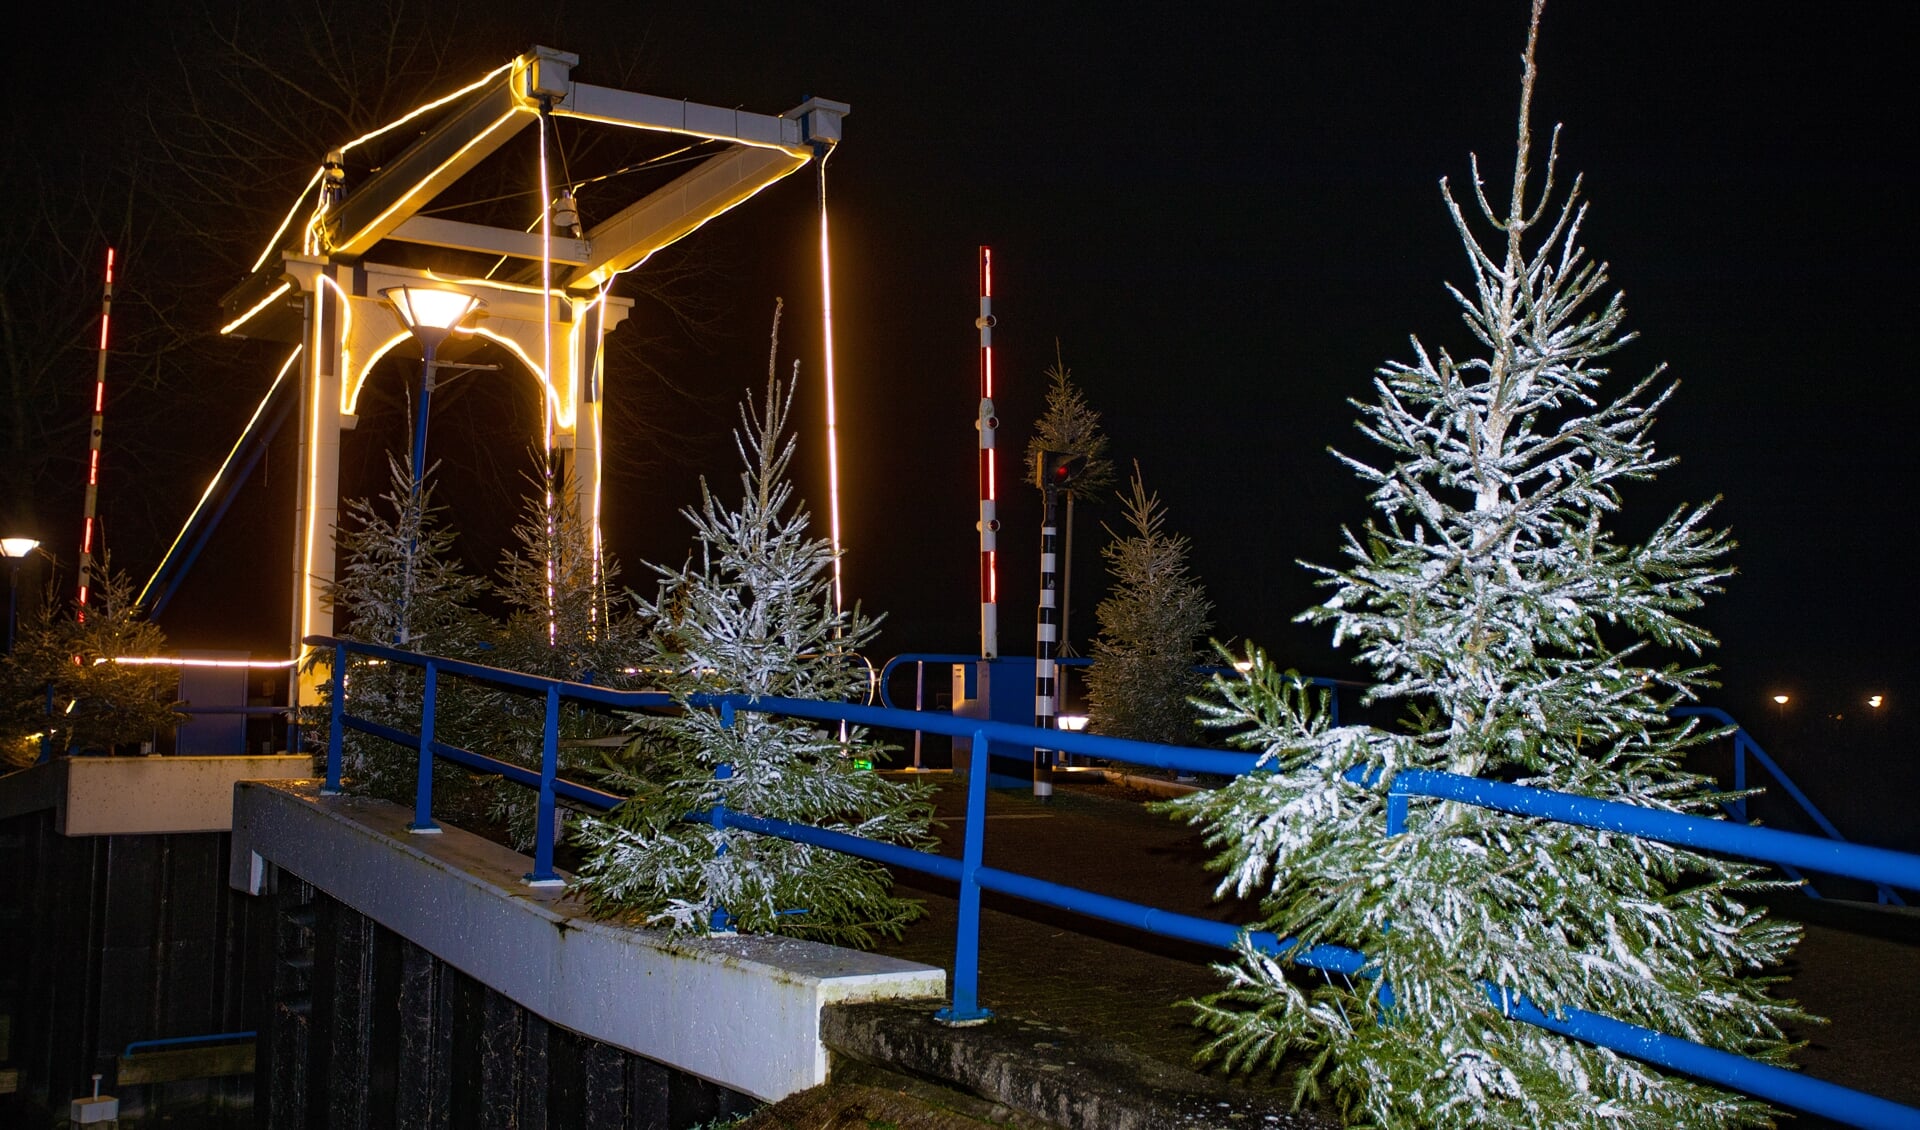 De brug van de Aanloophaven in kerstsferen in 2020.